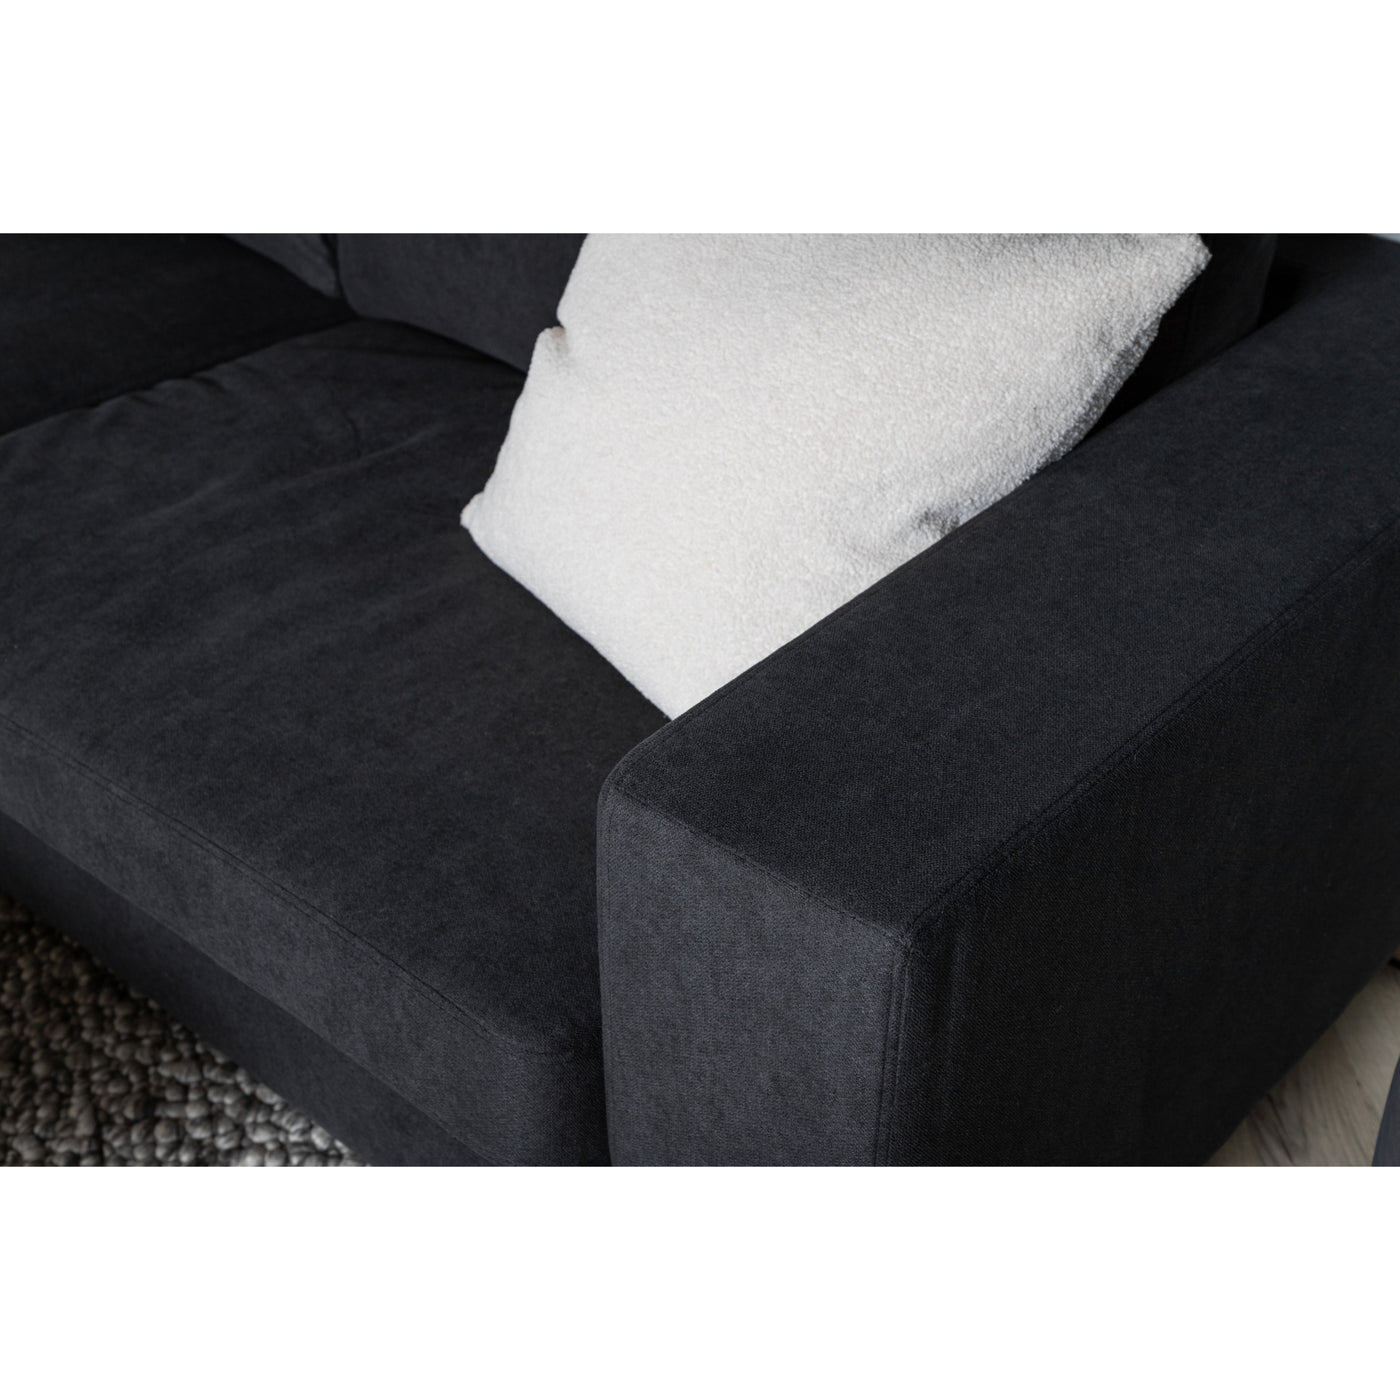 Sofa Callista 2-Sitzer –Schwarz